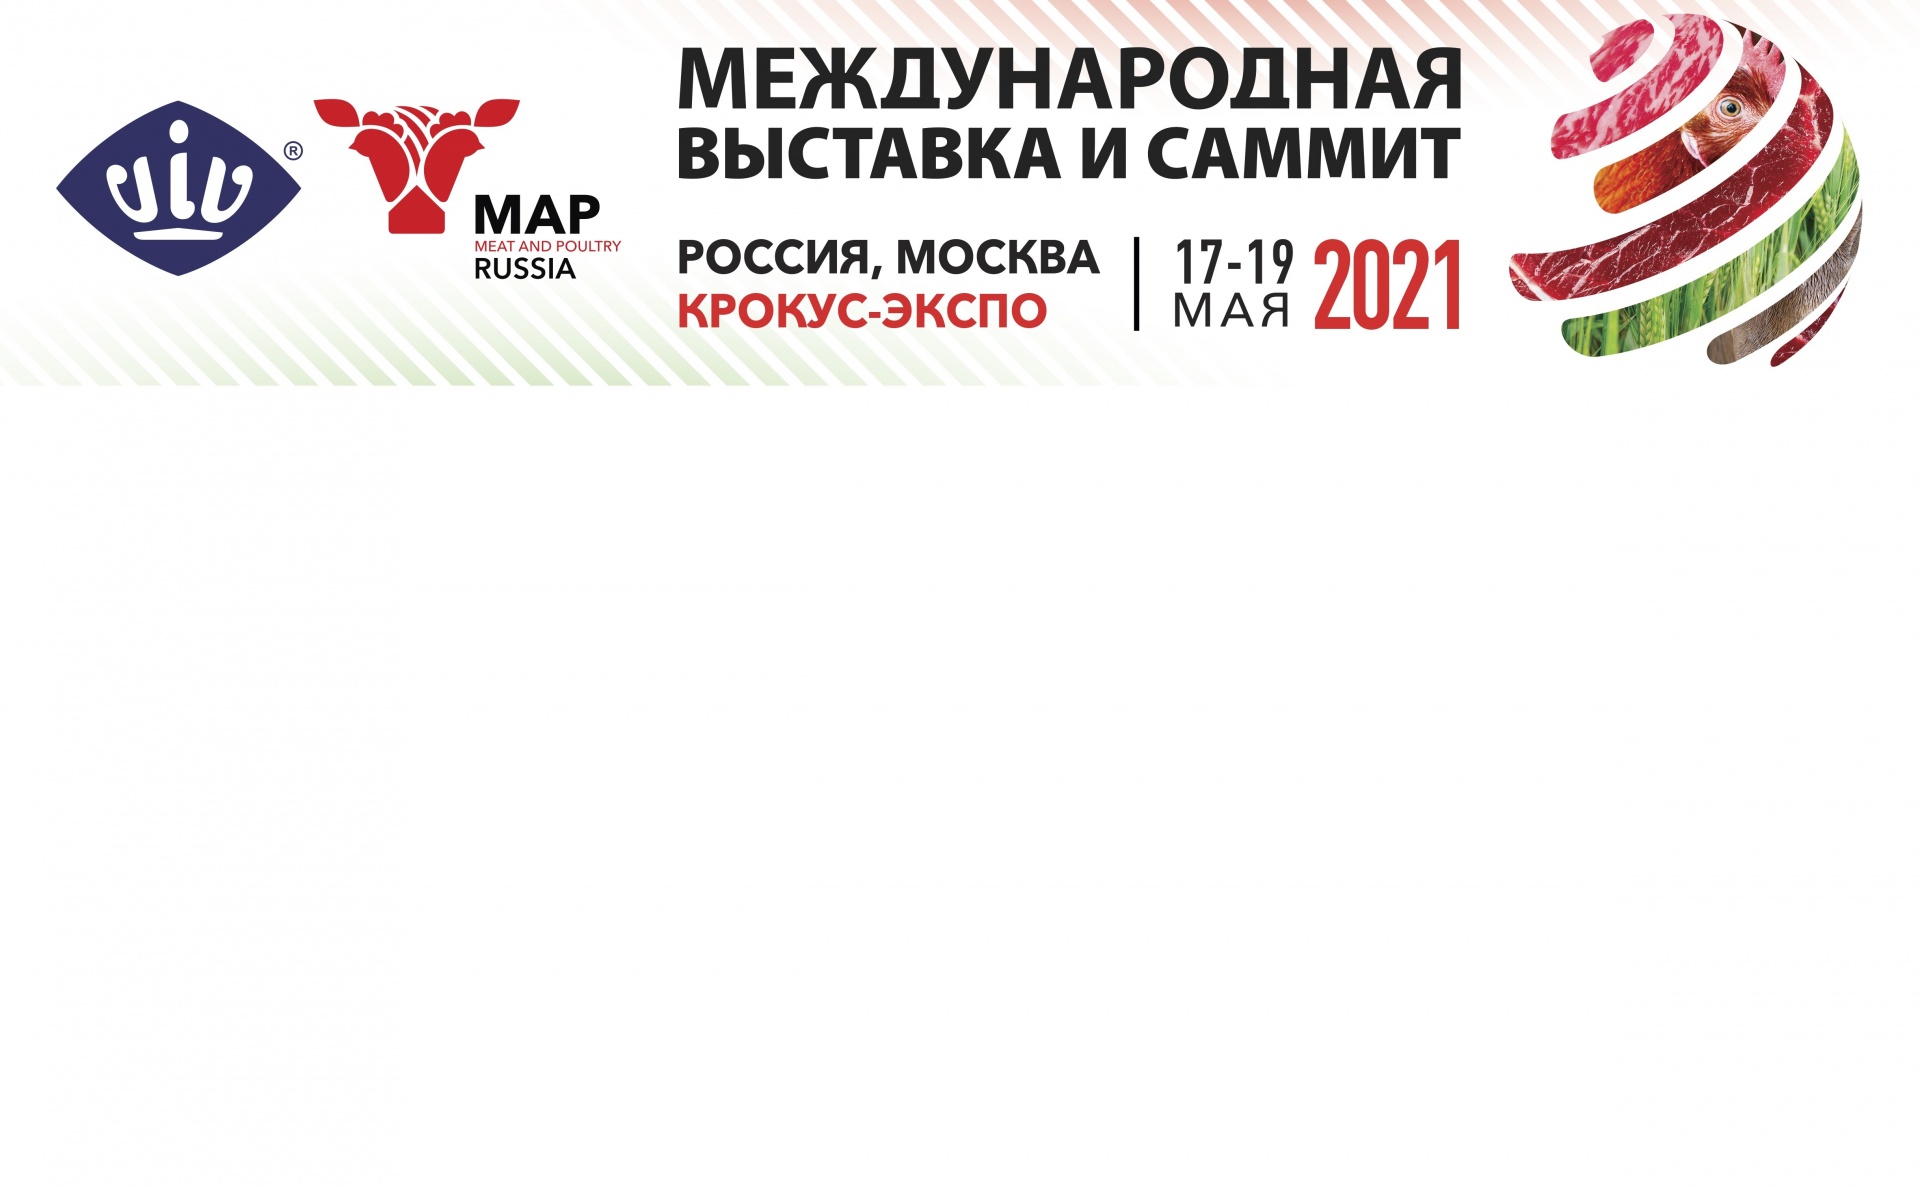 Международная специализированная выставка «Мясная промышленность. Куриный Король, Индустрия Холода для АПК / Meat and Poultry Industry Russia & VIV 2021» пройдет в Москве с 17 по 19 мая 2021 года